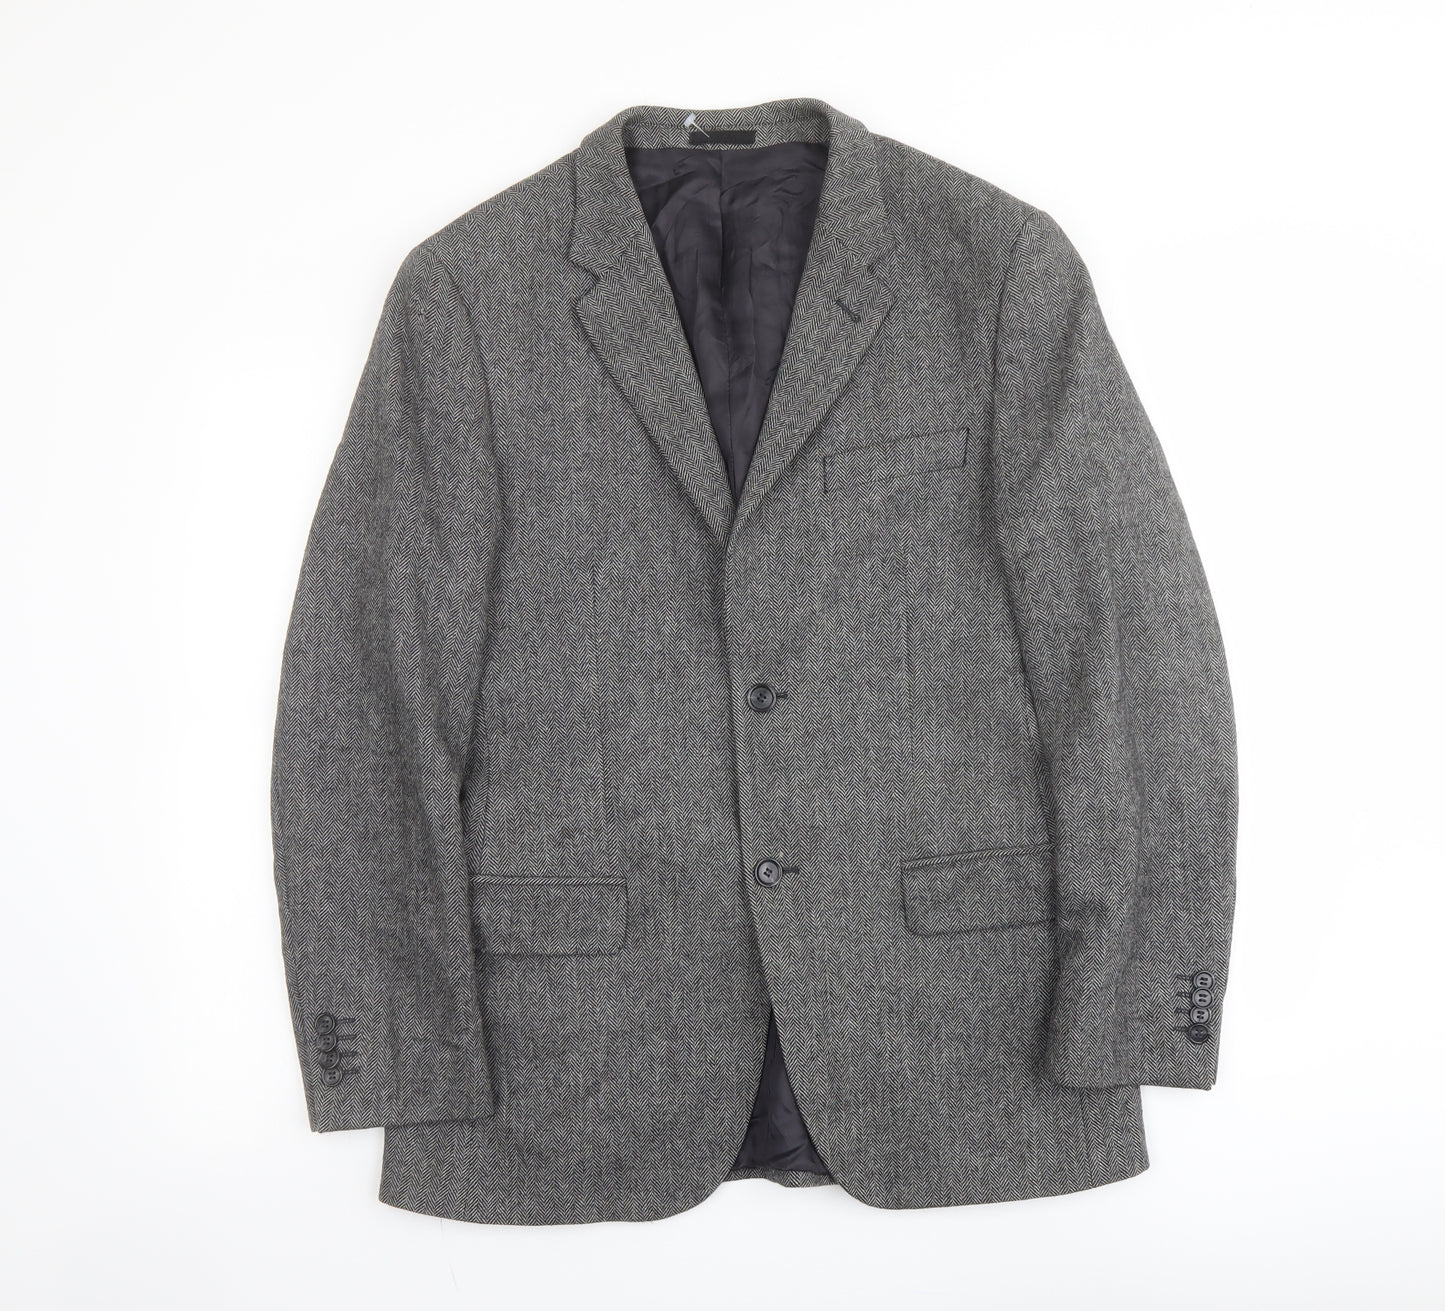 H&M Mens Grey Herringbone Wool Jacket Suit Jacket Size 40 Regular